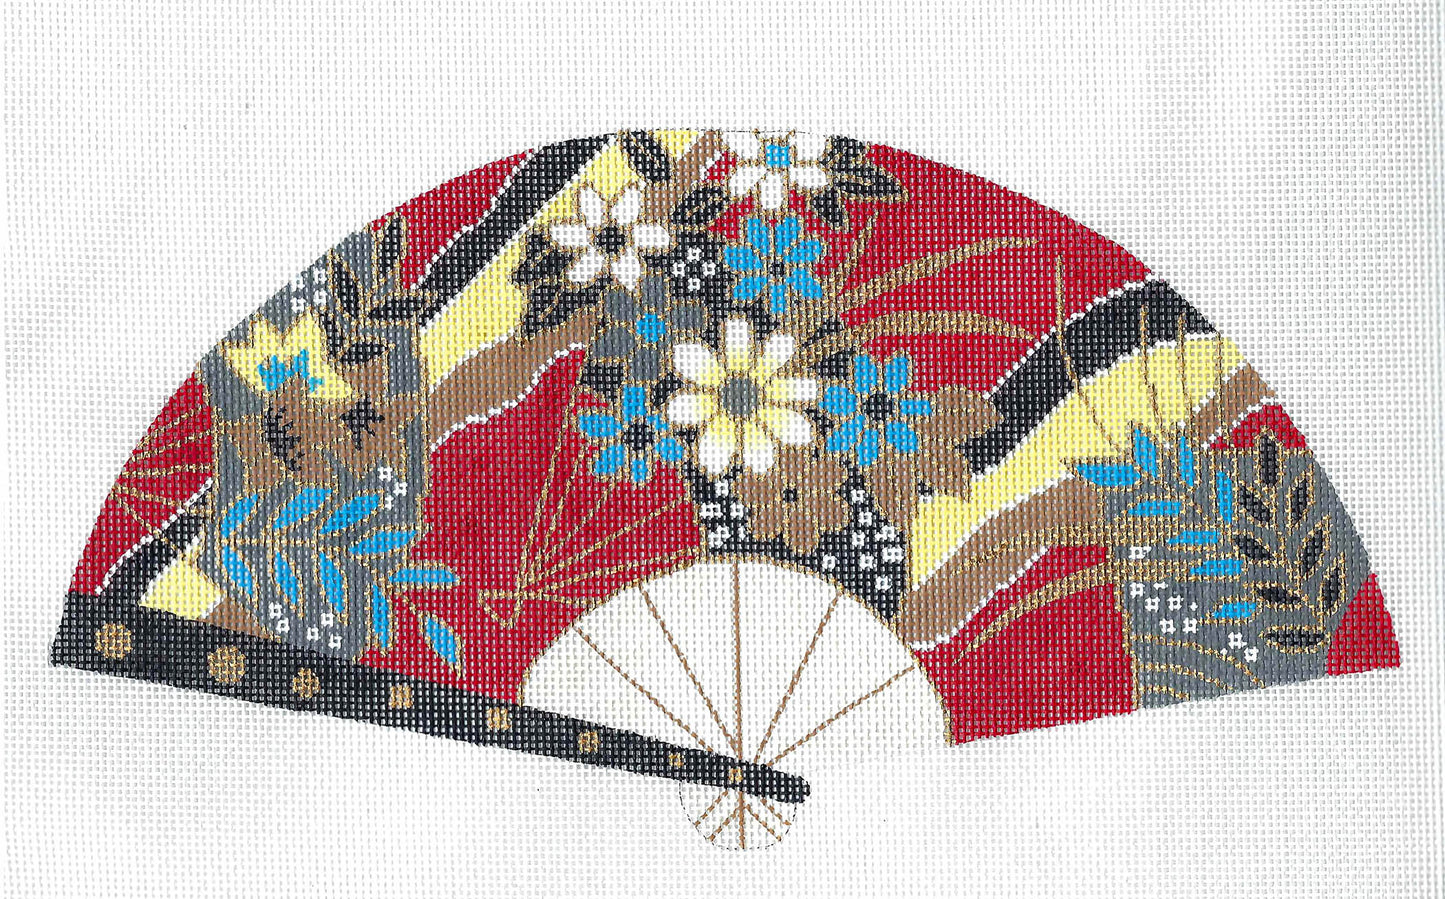 Oriental Fan ~ Oriental FAN of Flowers on Chinese Red handpainted Needlepoint Canvas by LEE